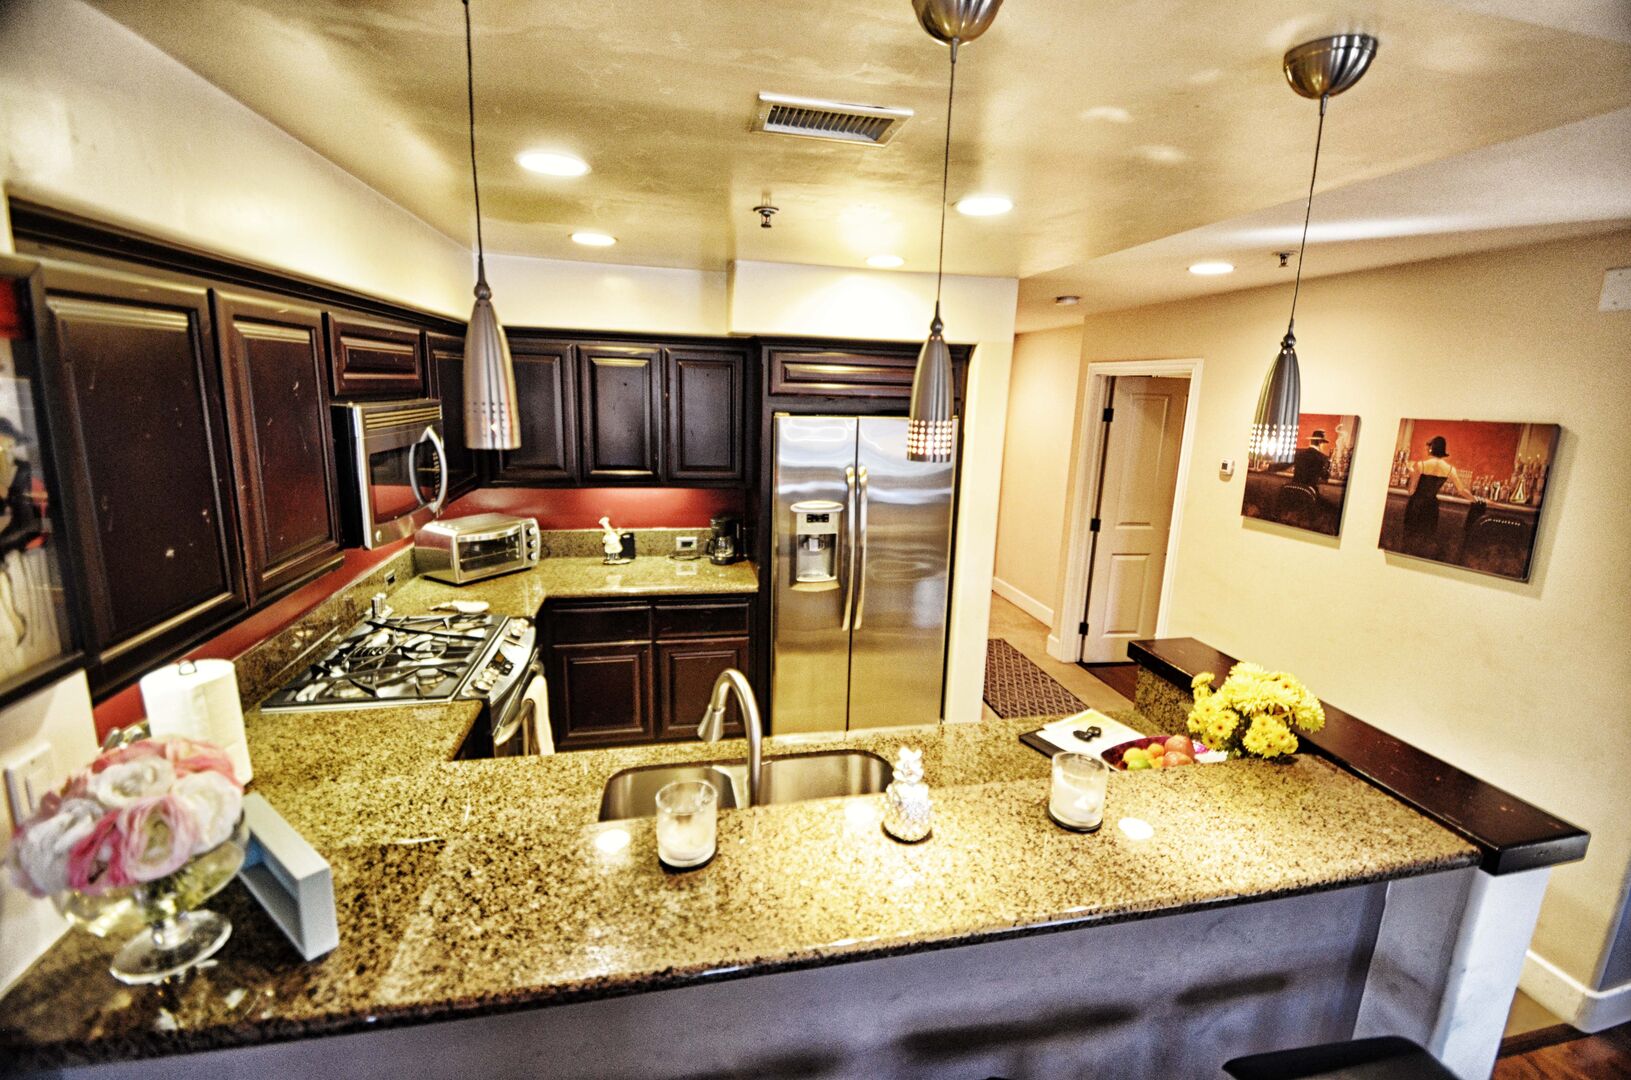 Kitchen with stainless steel appliances, kitchen, gas stove, refrigerator, dishwasher, sink